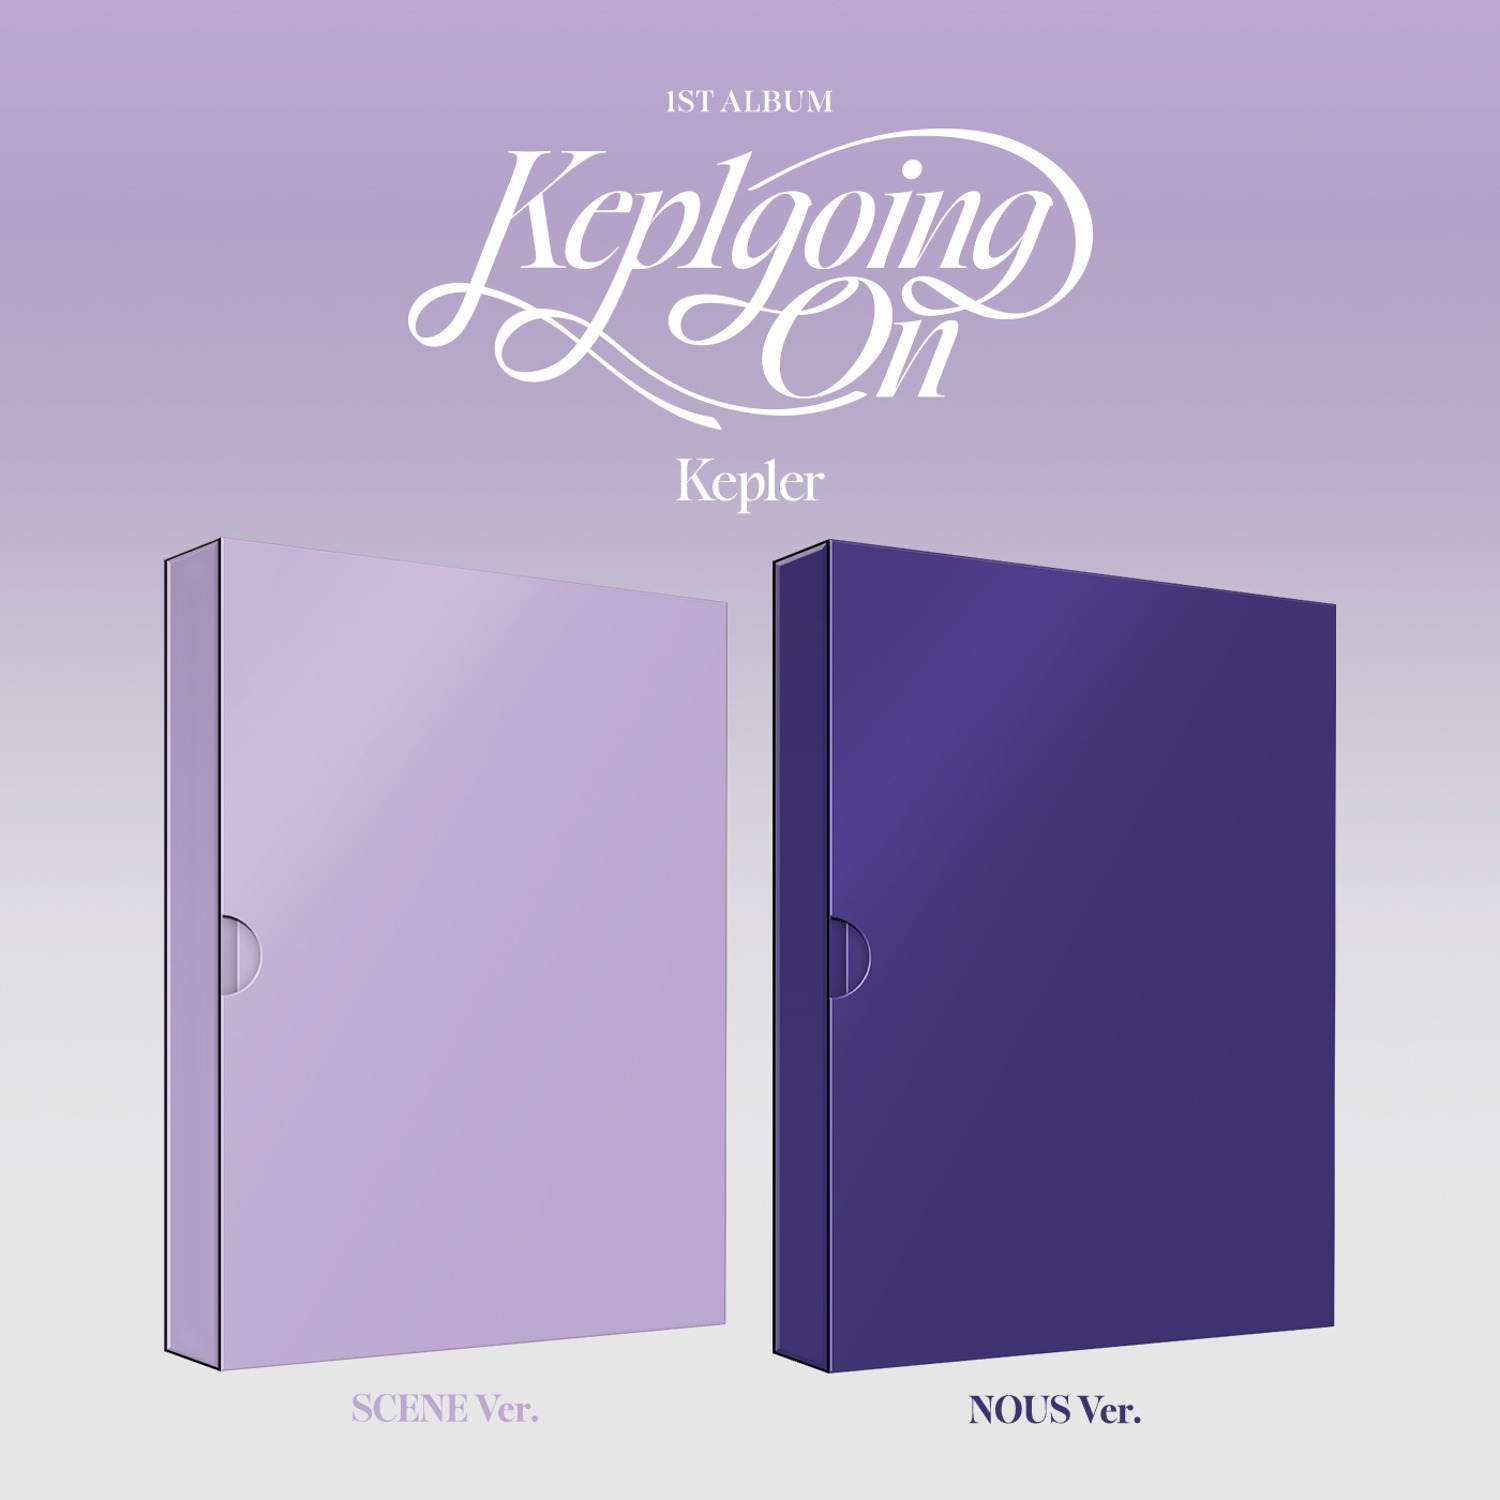 케플러(Kep1er) - 1st Album [Kep1going On] (Scene Ver. / Nous Ver.) (랜덤)